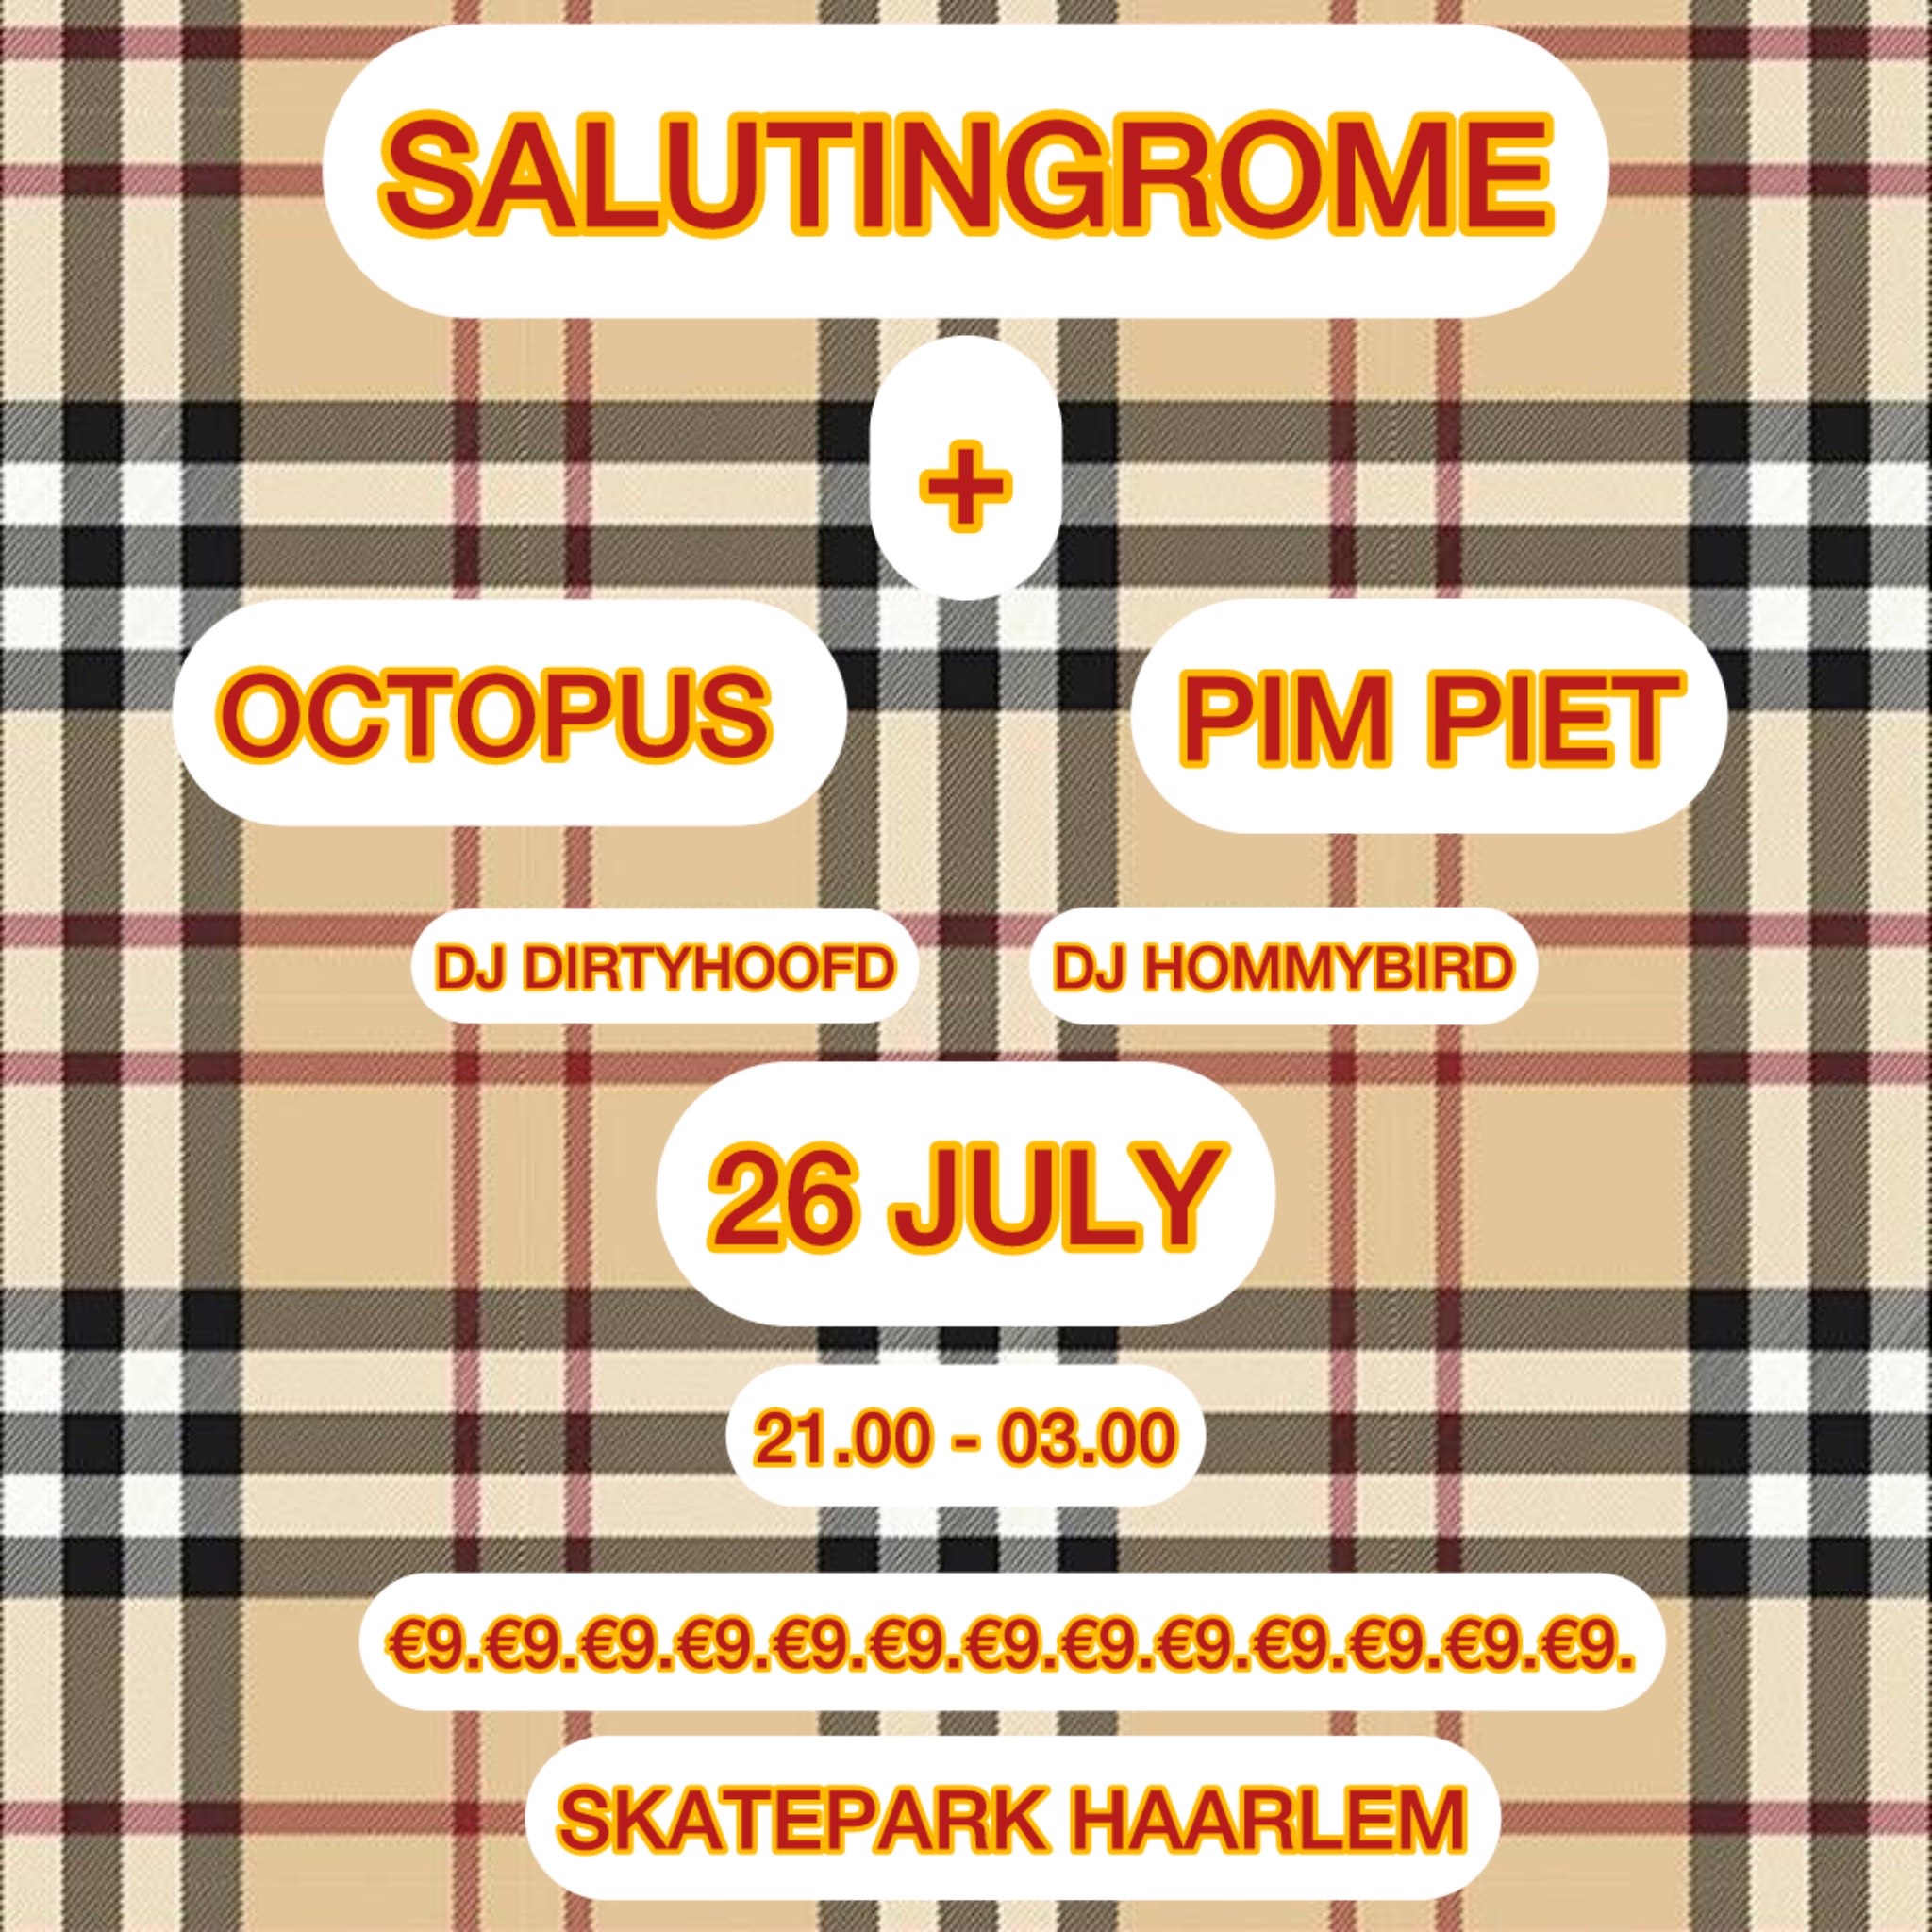 Salutingrome, Octopus, Pim Piet Skatepark Haarlem